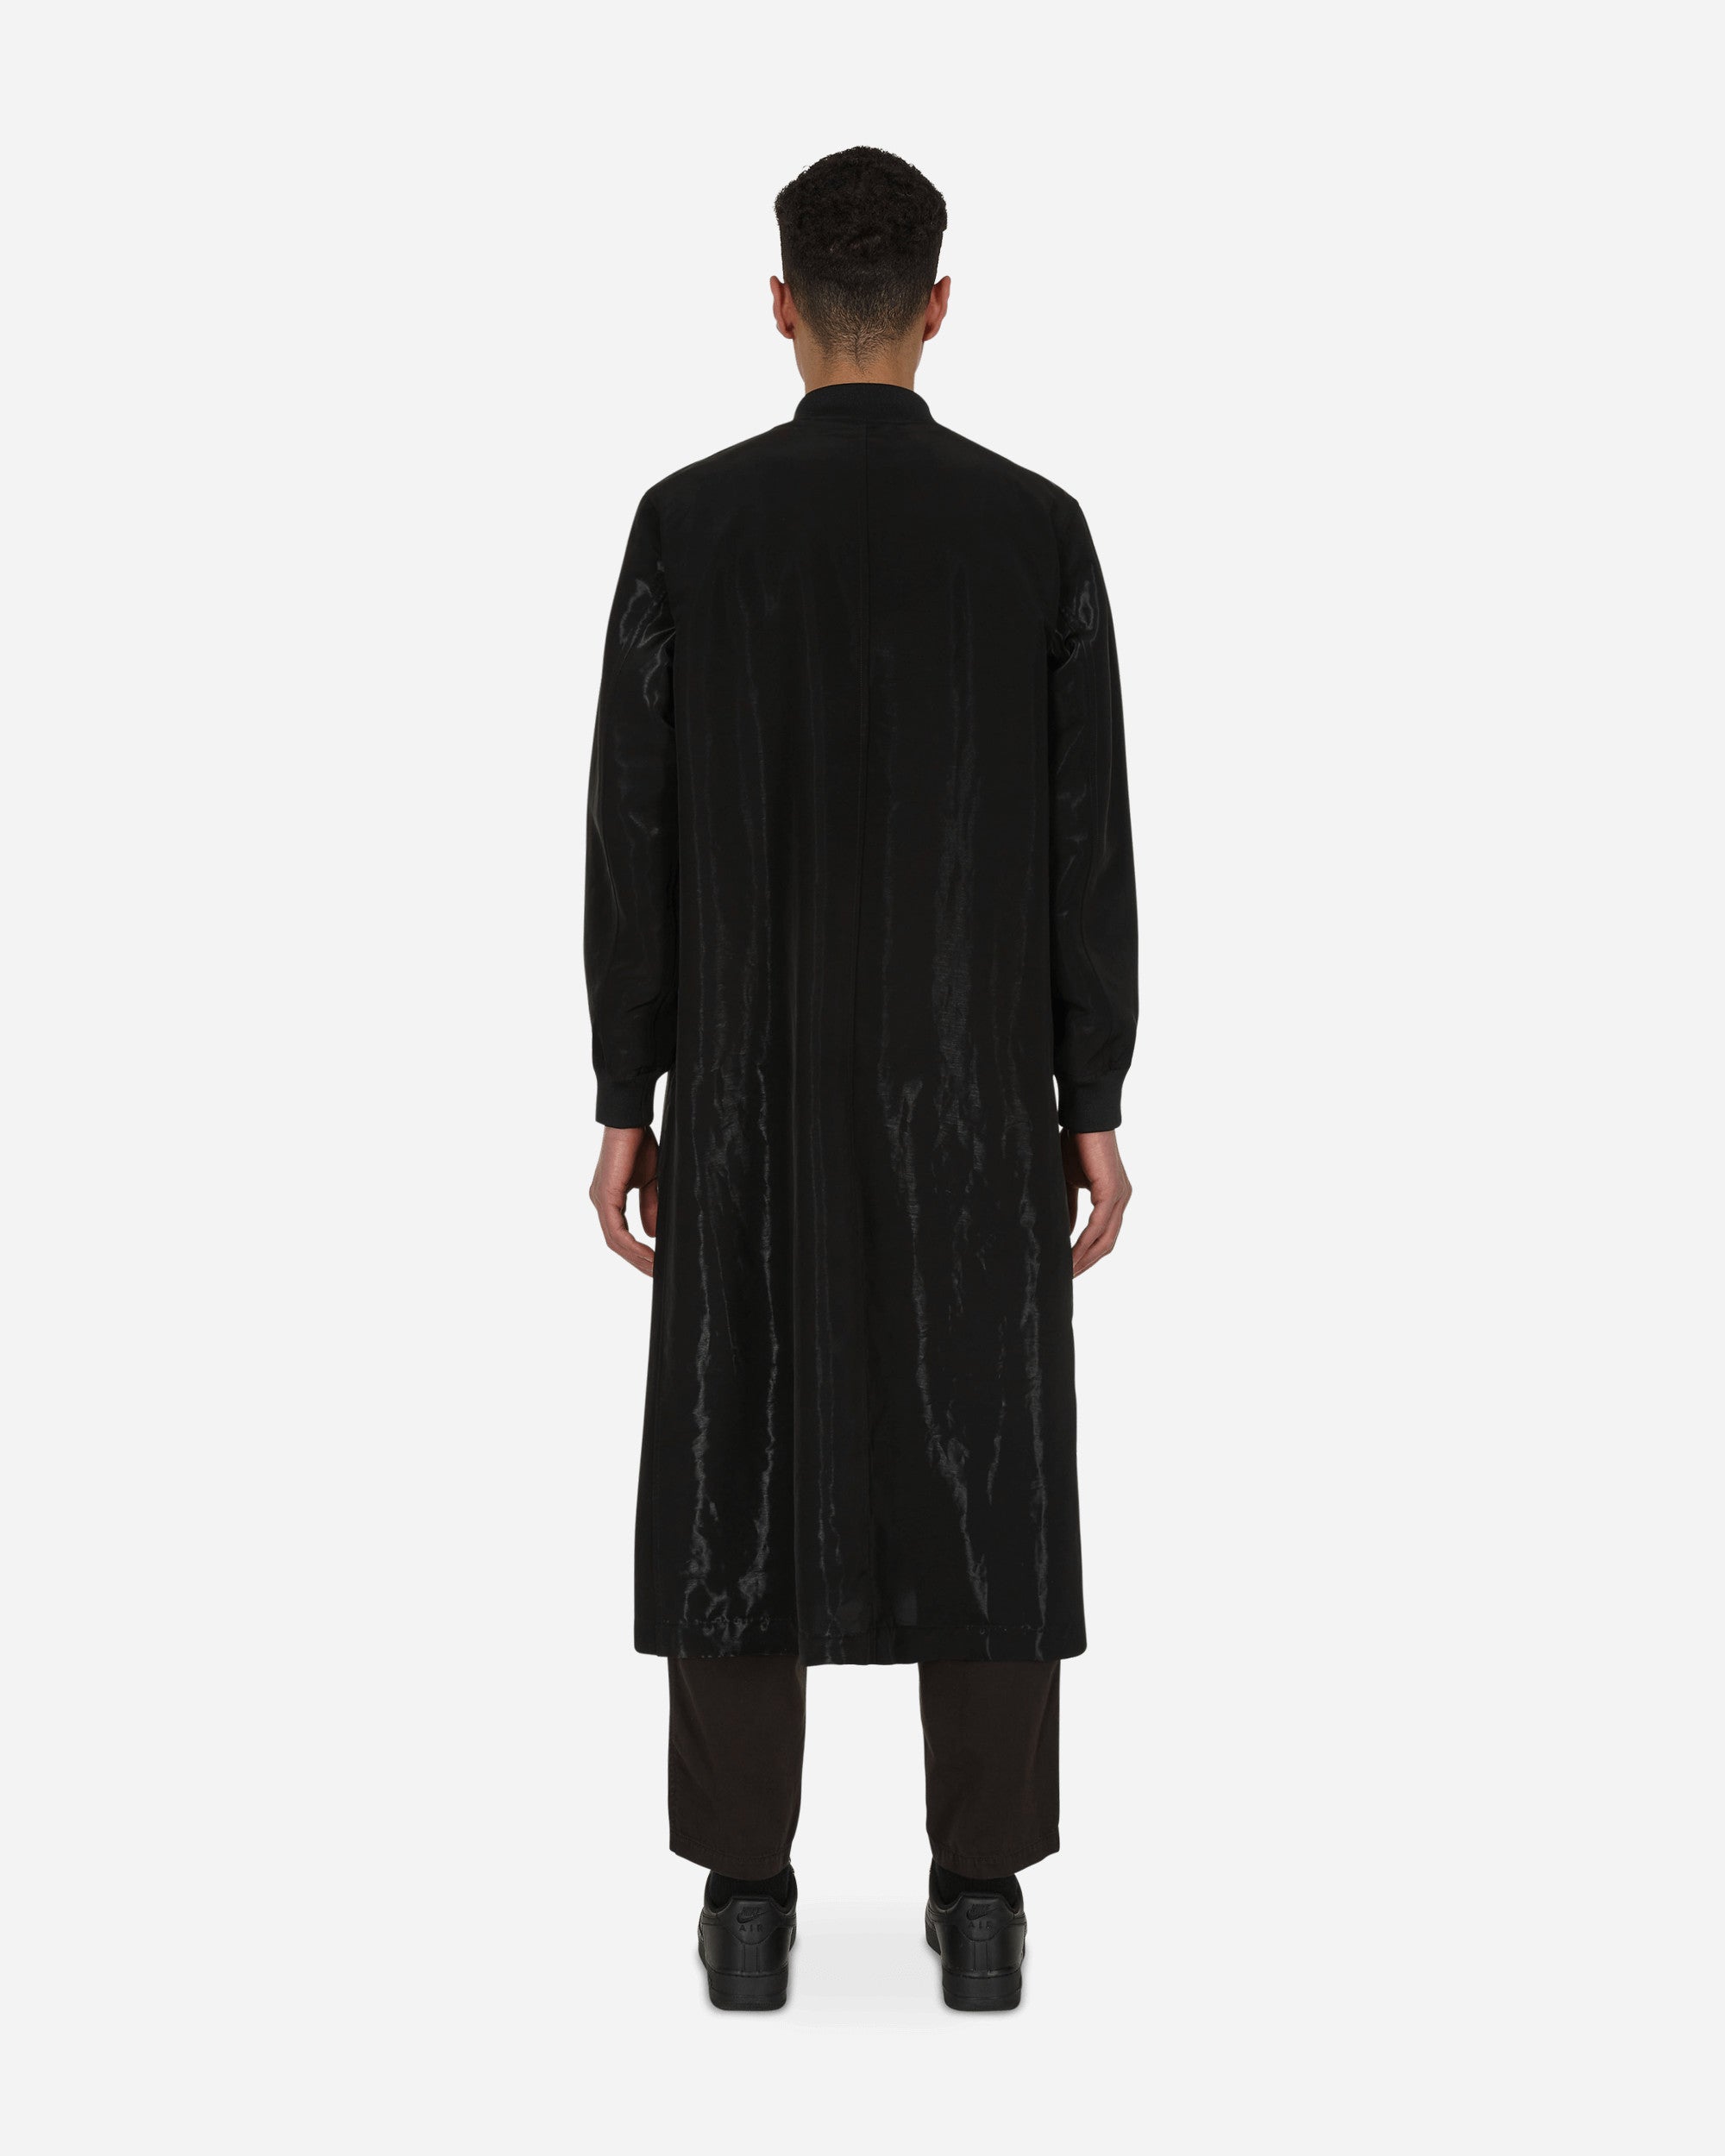 Comme Des Garçons Black Coat Black Coats and Jackets Coats 1I-C002-S22 1